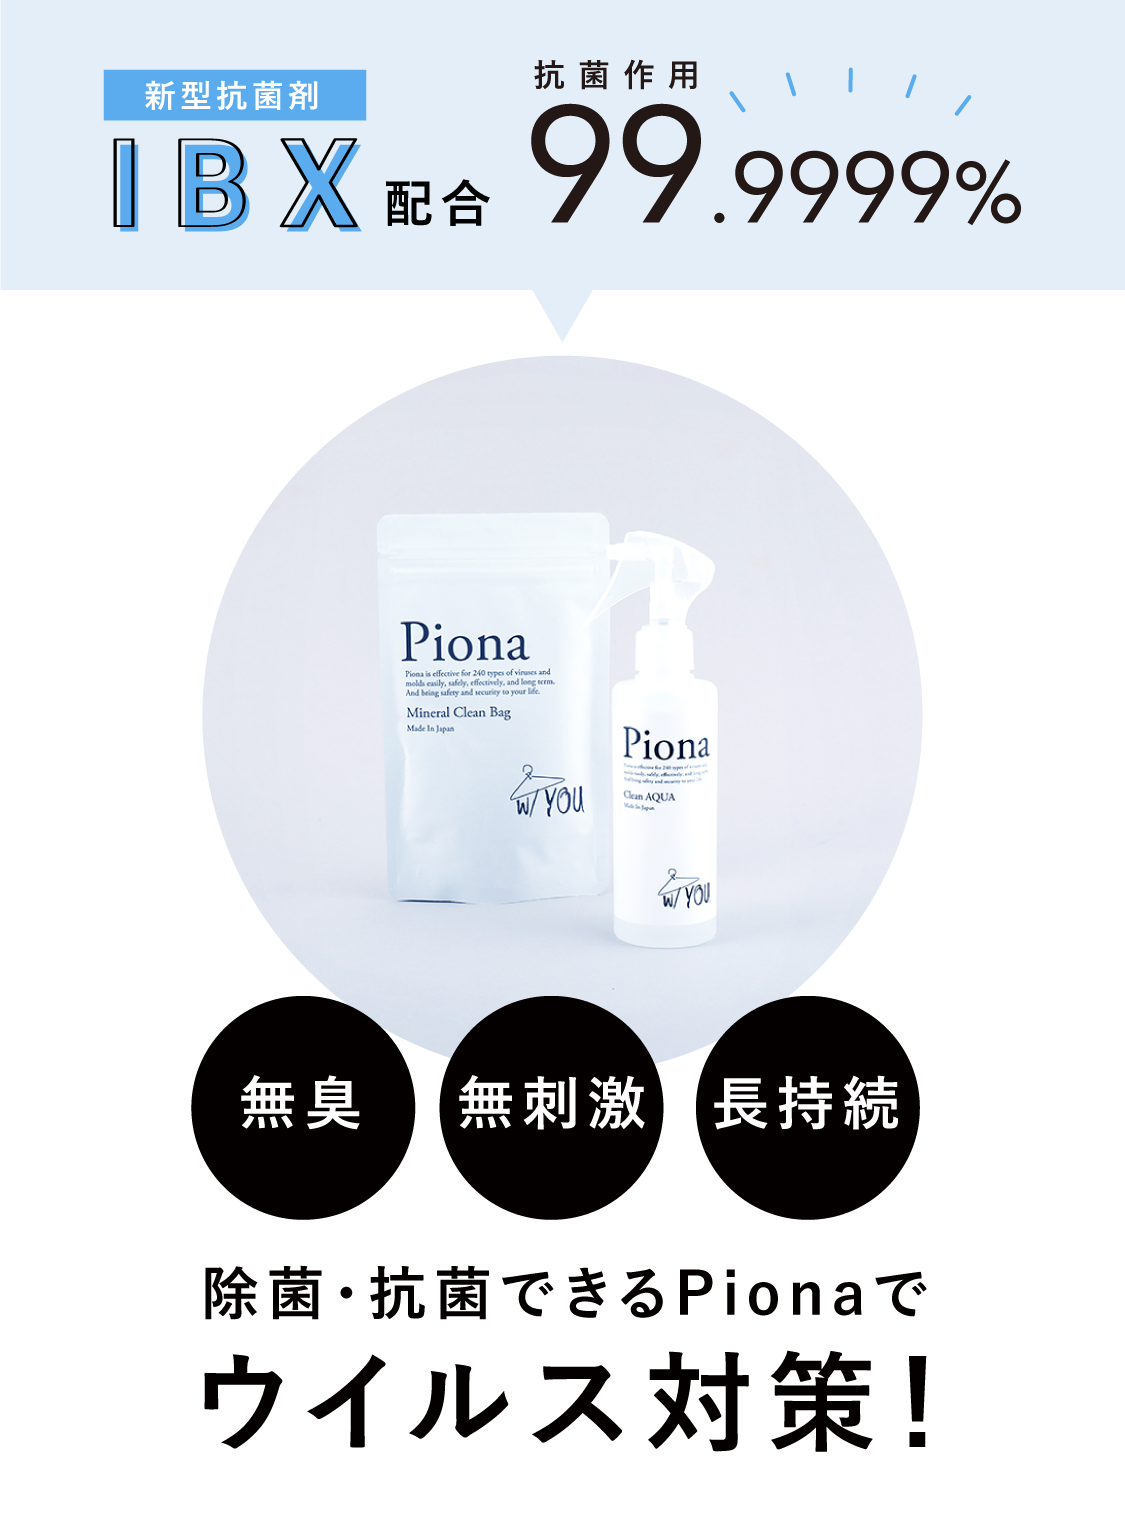 新型抗菌剤IBX配合　抗菌作用99.9999% Pionaでウイルス対策